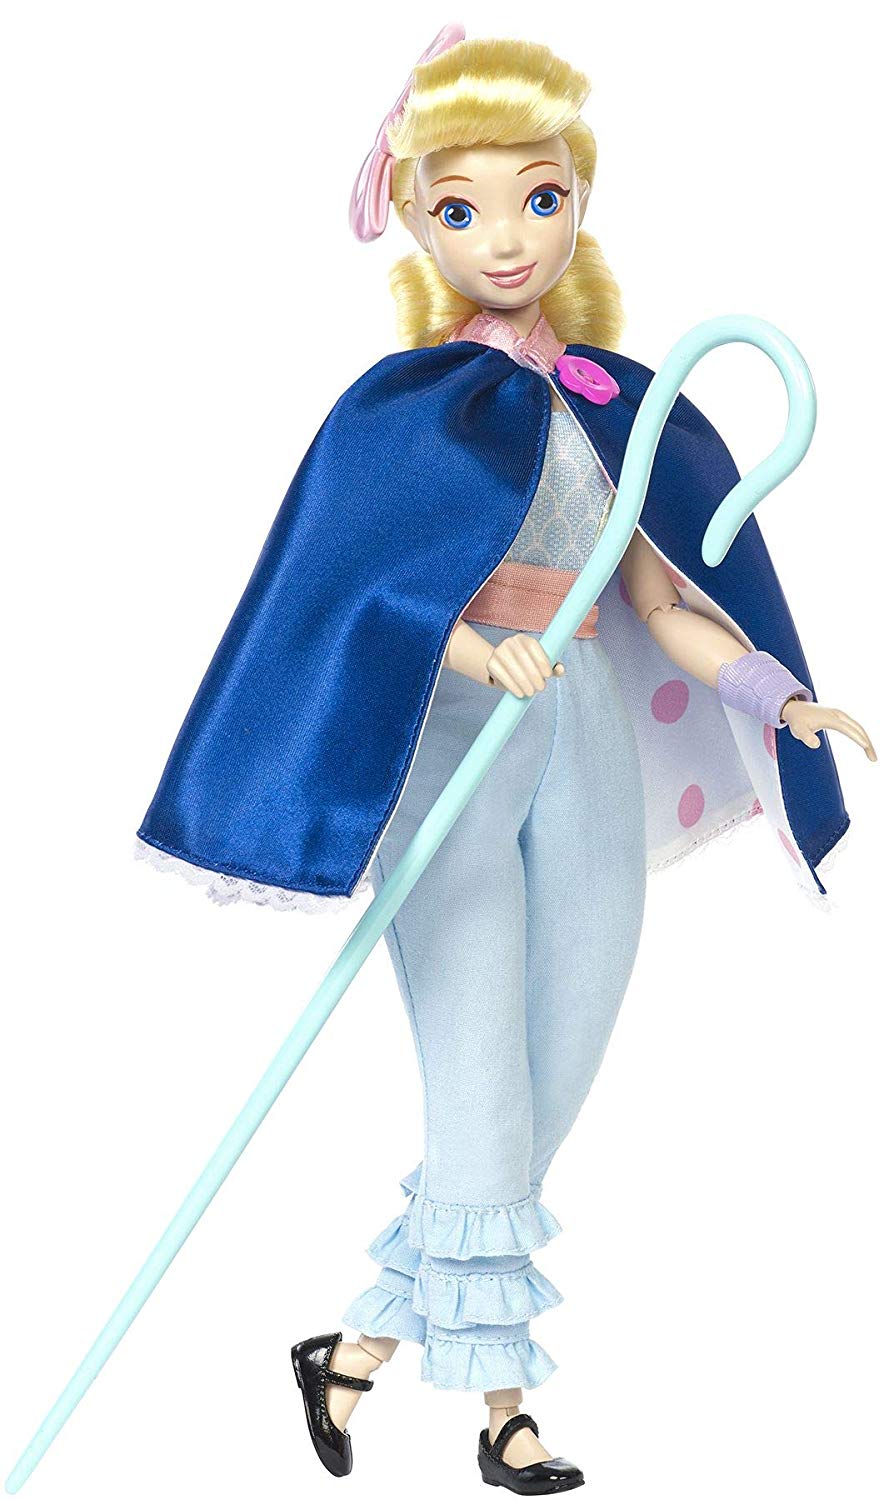 Кукла-фигурка Shepherd из серии Toy Story 4  